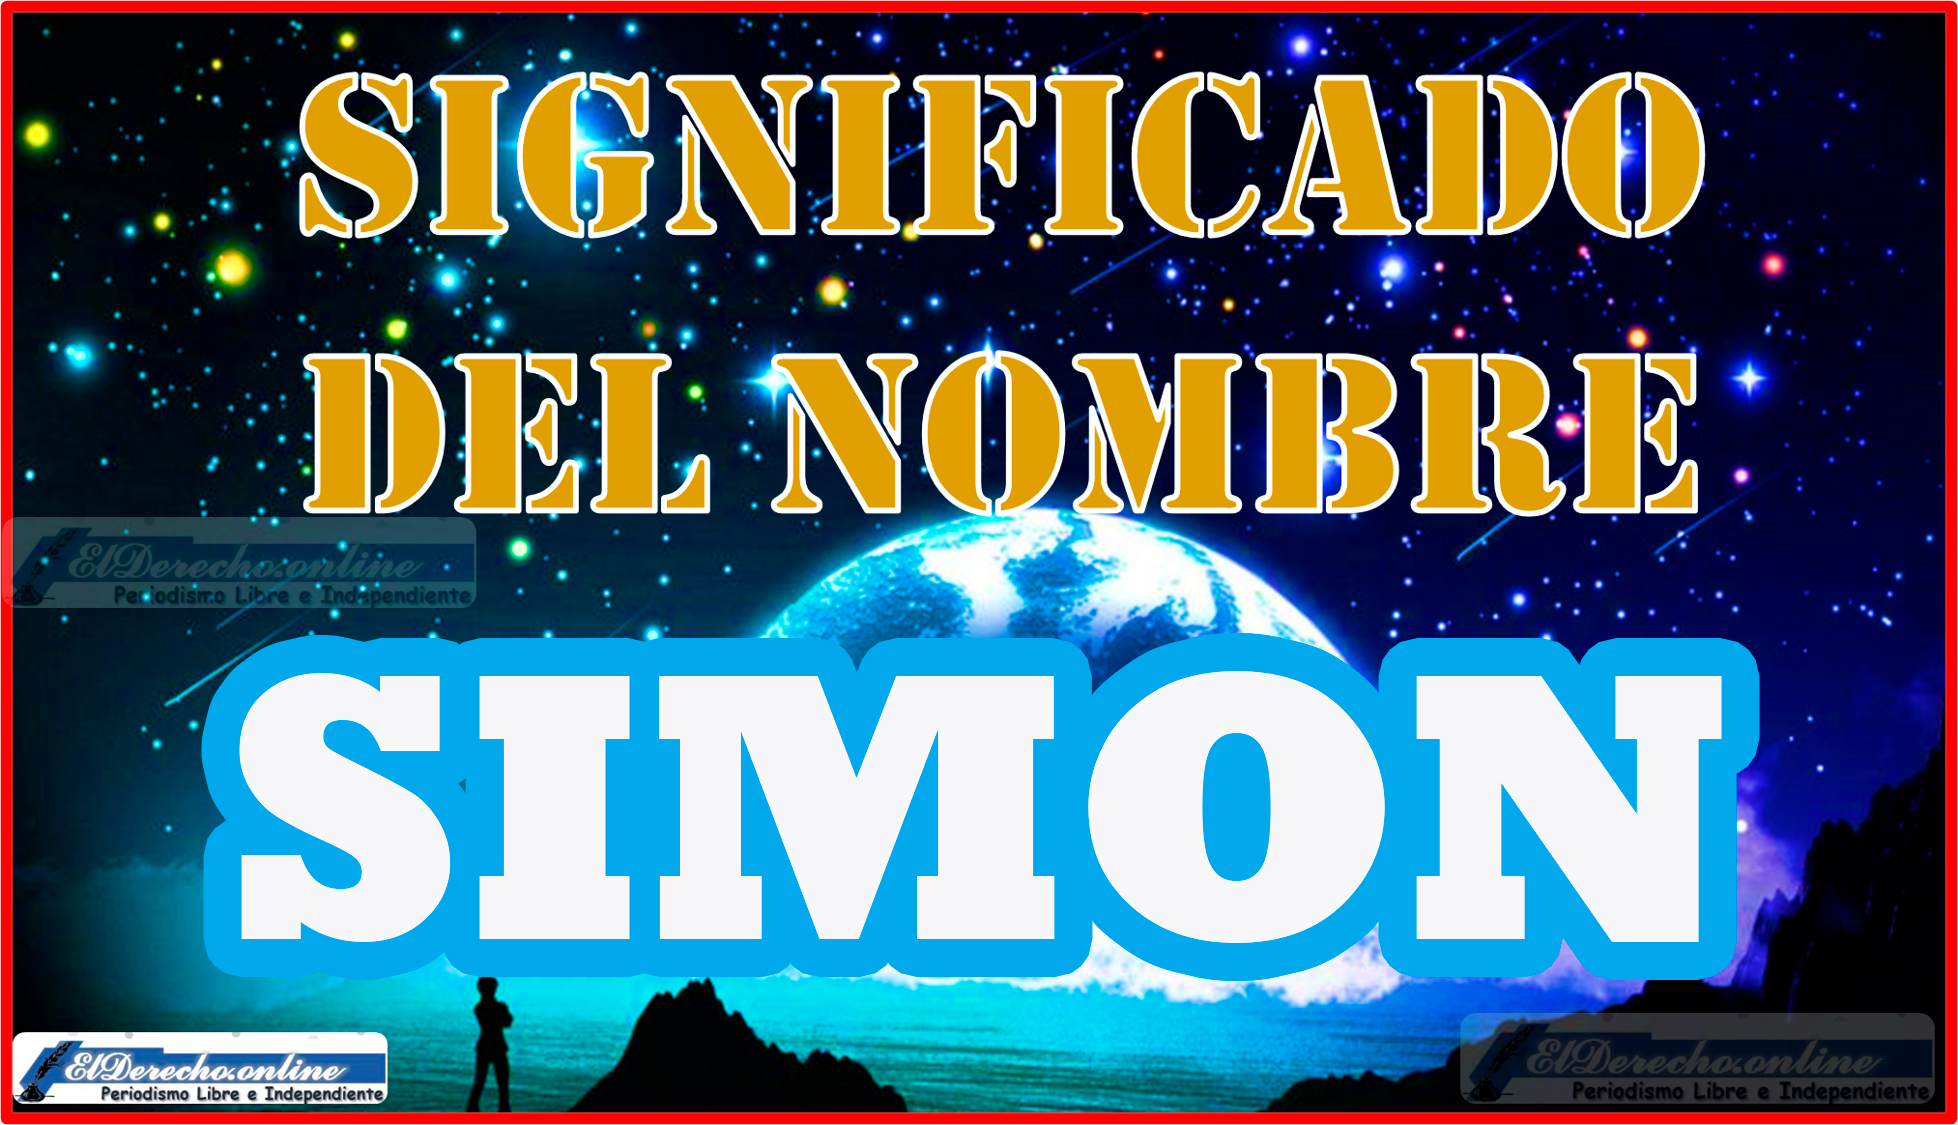 Significado del nombre Simon, su origen y más